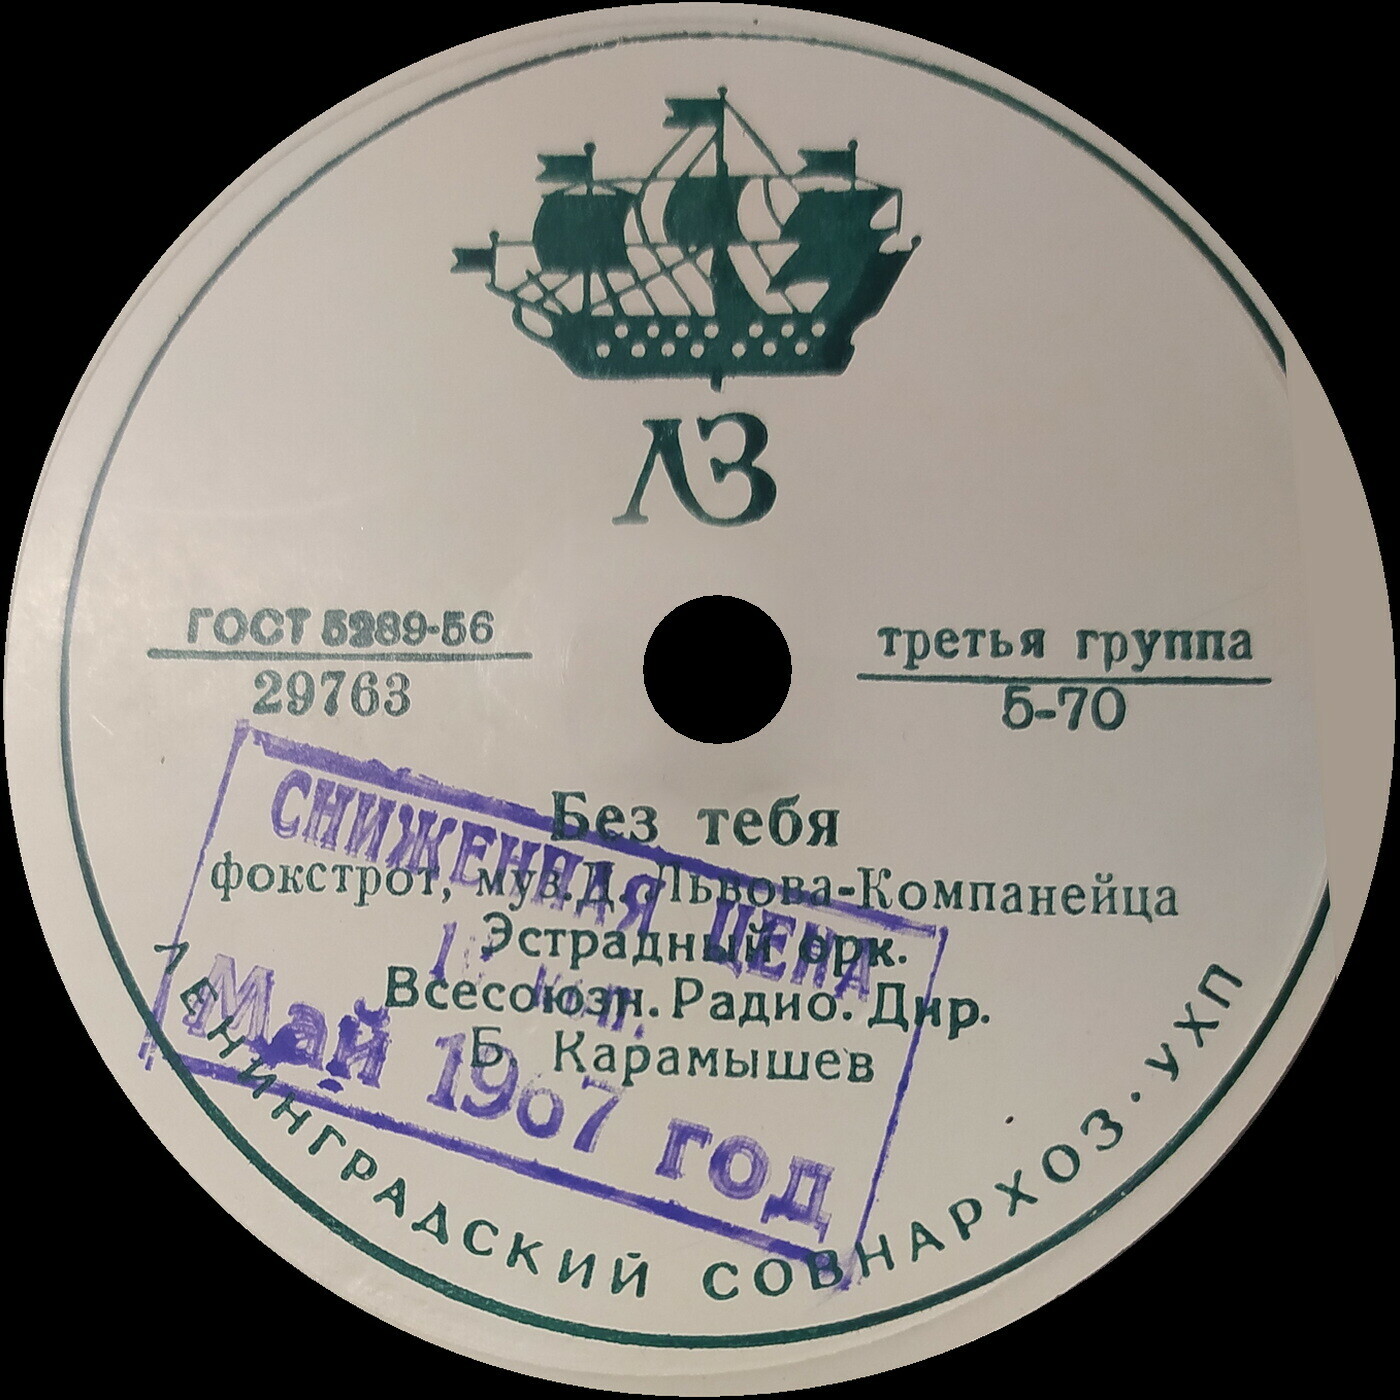 Эстрадный оркестр Всесоюзного радио, дирижер Б. Карамышев